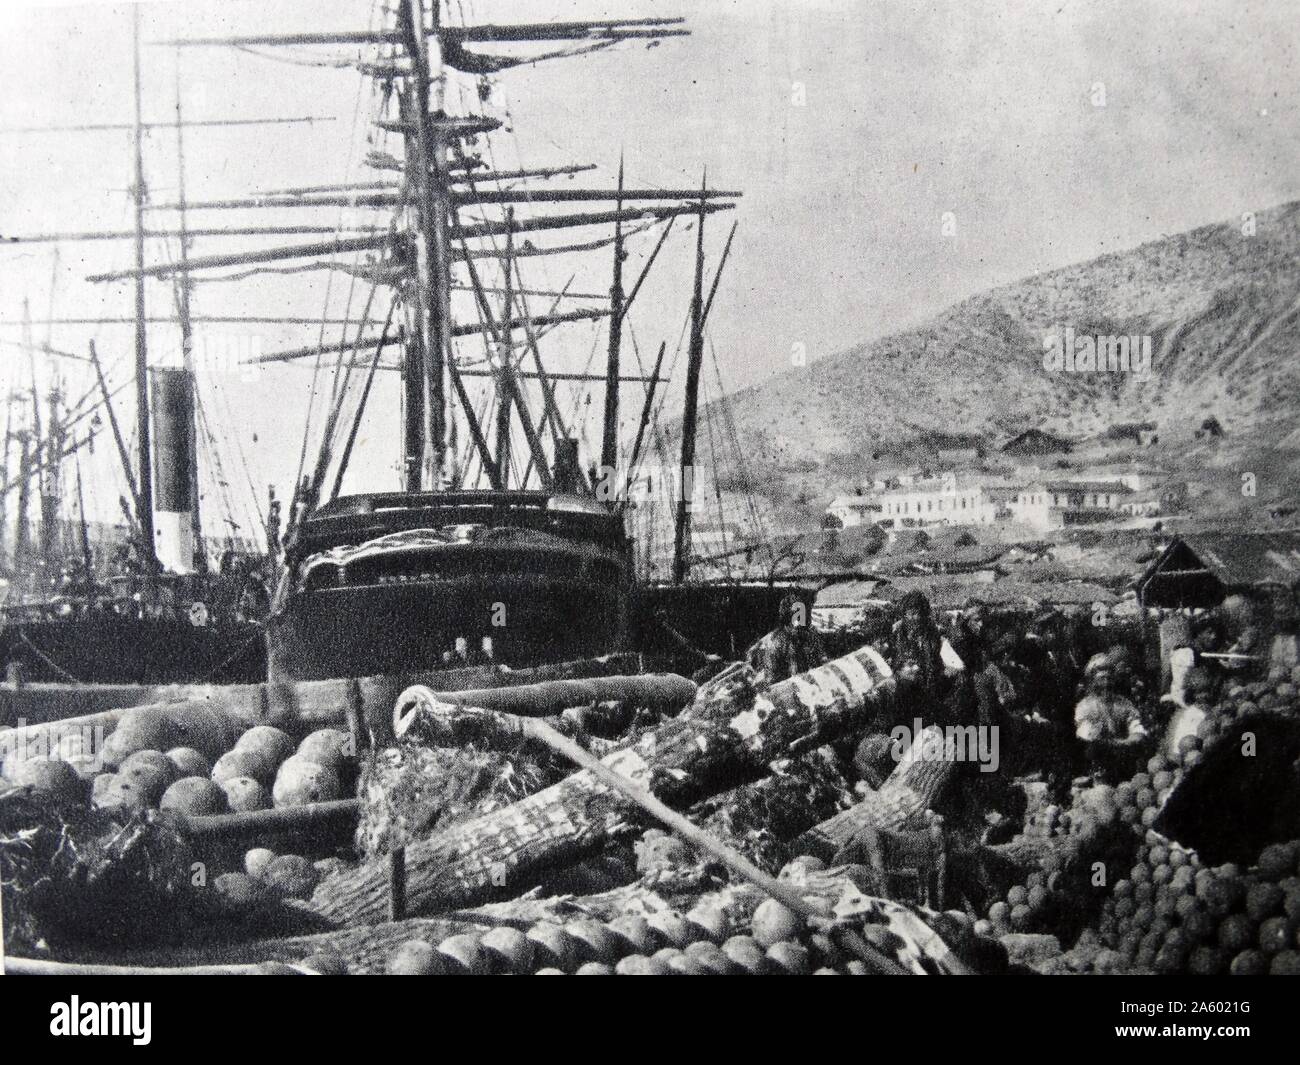 L'ordnance wharf, balaclava 1855, photographié par Roger Fenton. Fenton a été le pionnier de la photographie de guerre qui a établi sa réputation au cours de la guerre de Crimée 1853-1855 Banque D'Images